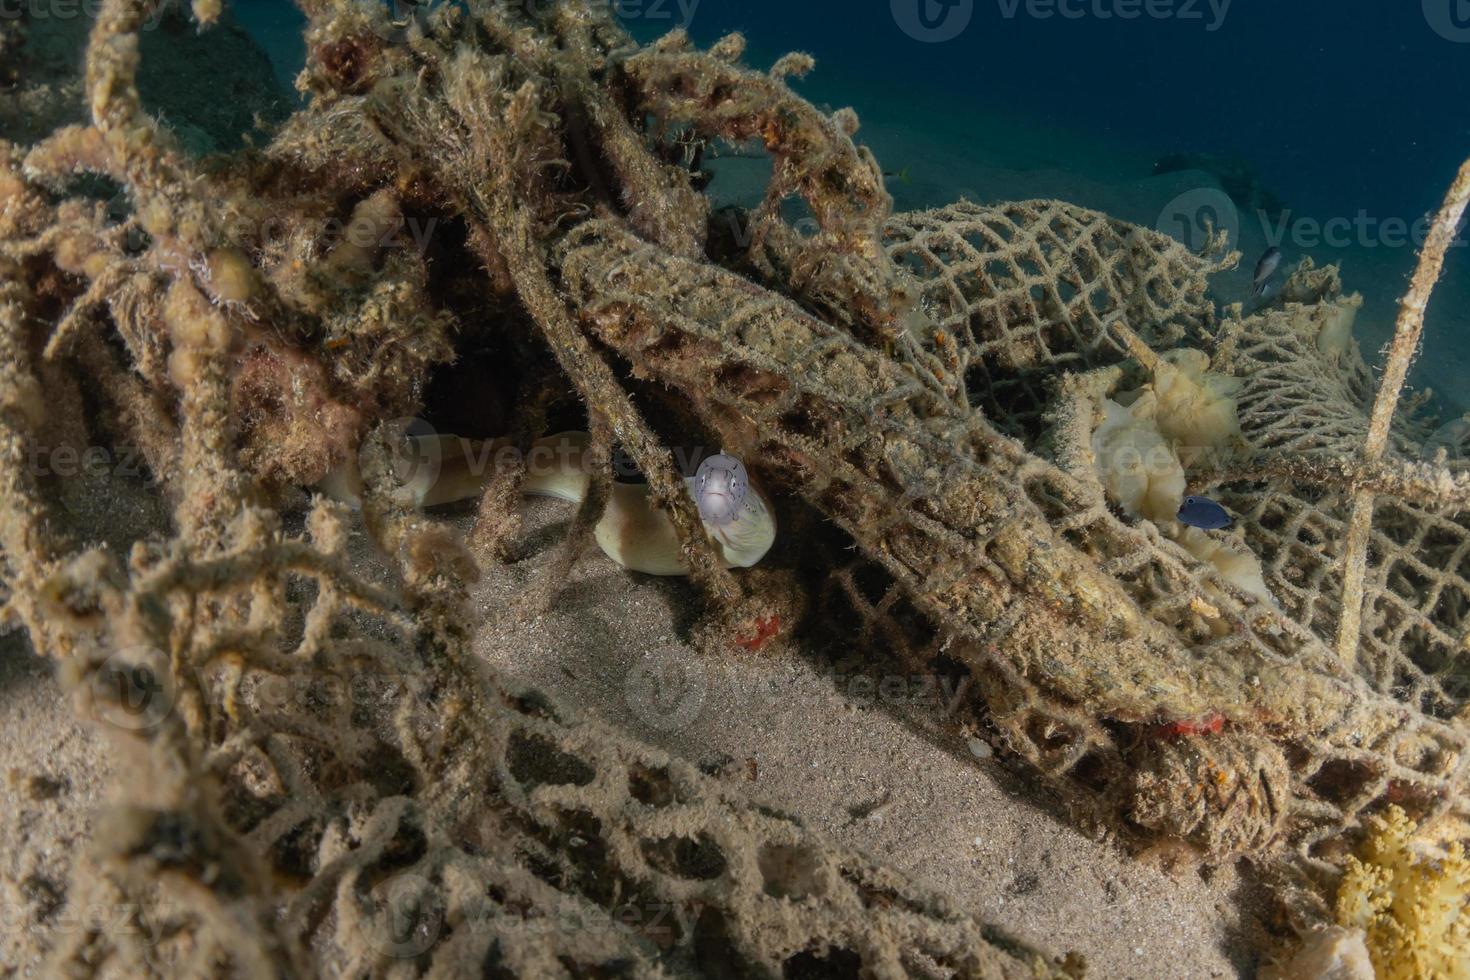 Morena mooray lycodontis undulatus en el mar rojo, eilat israel foto